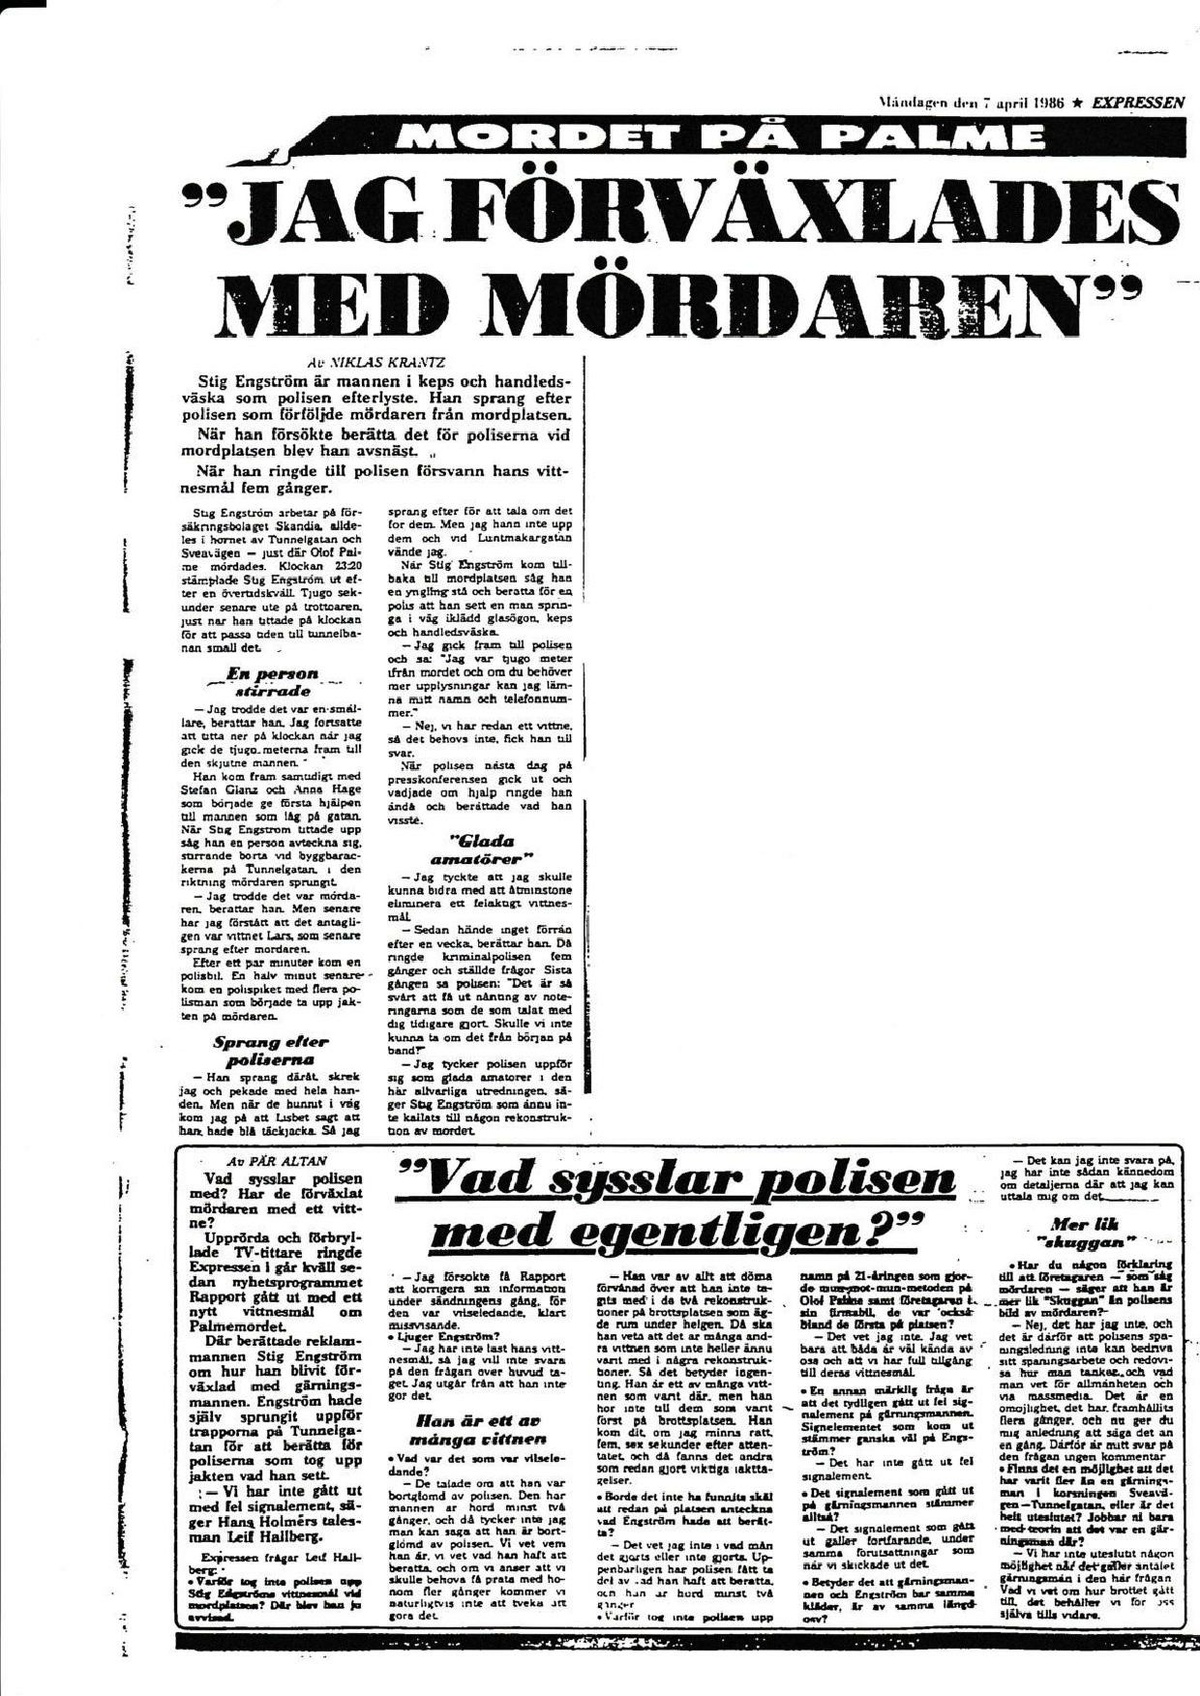 Pol-2019-02-11 E63-29 Tidningsartiklar om Stig Engström Expressen och KP 7 april 1986.pdf